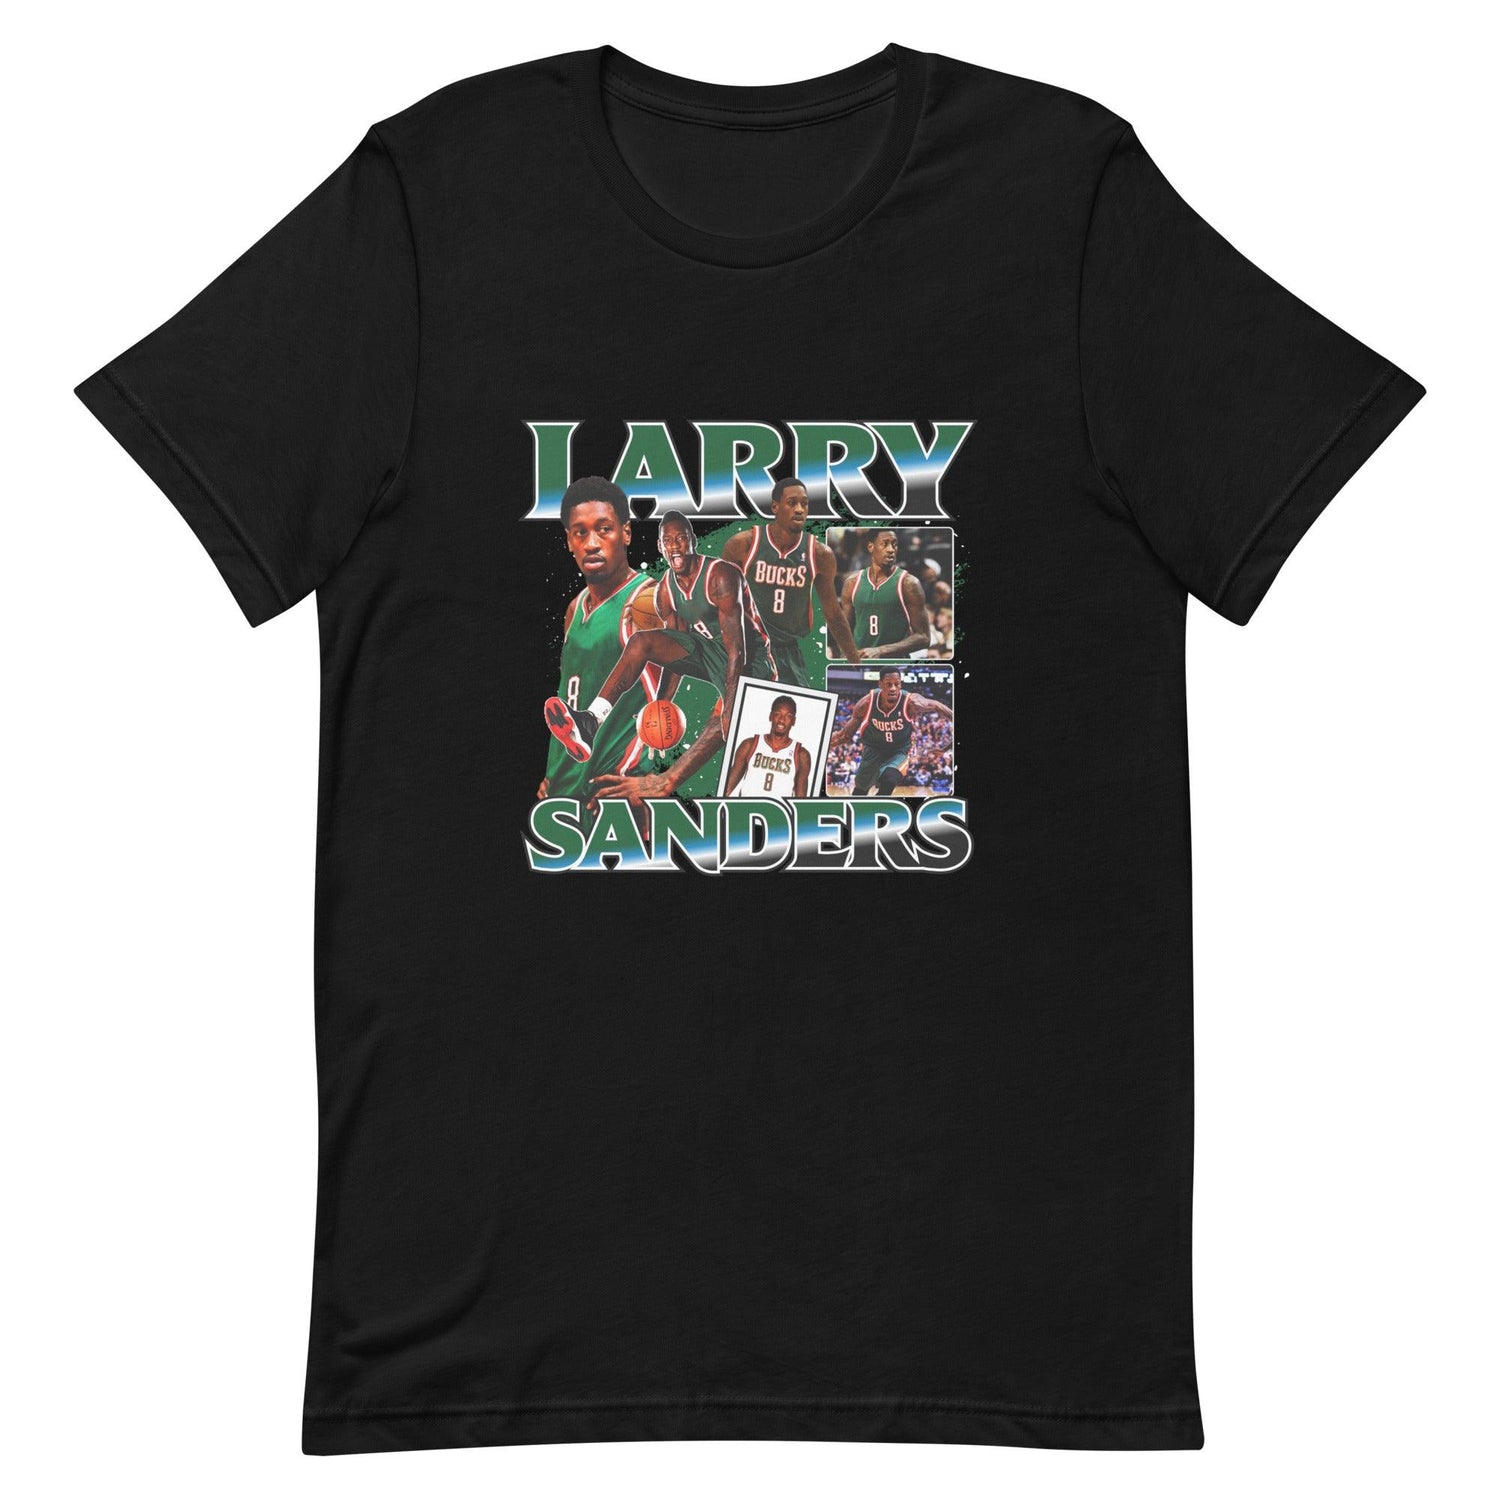 Larry Sanders "Vintage" t-shirt - Fan Arch